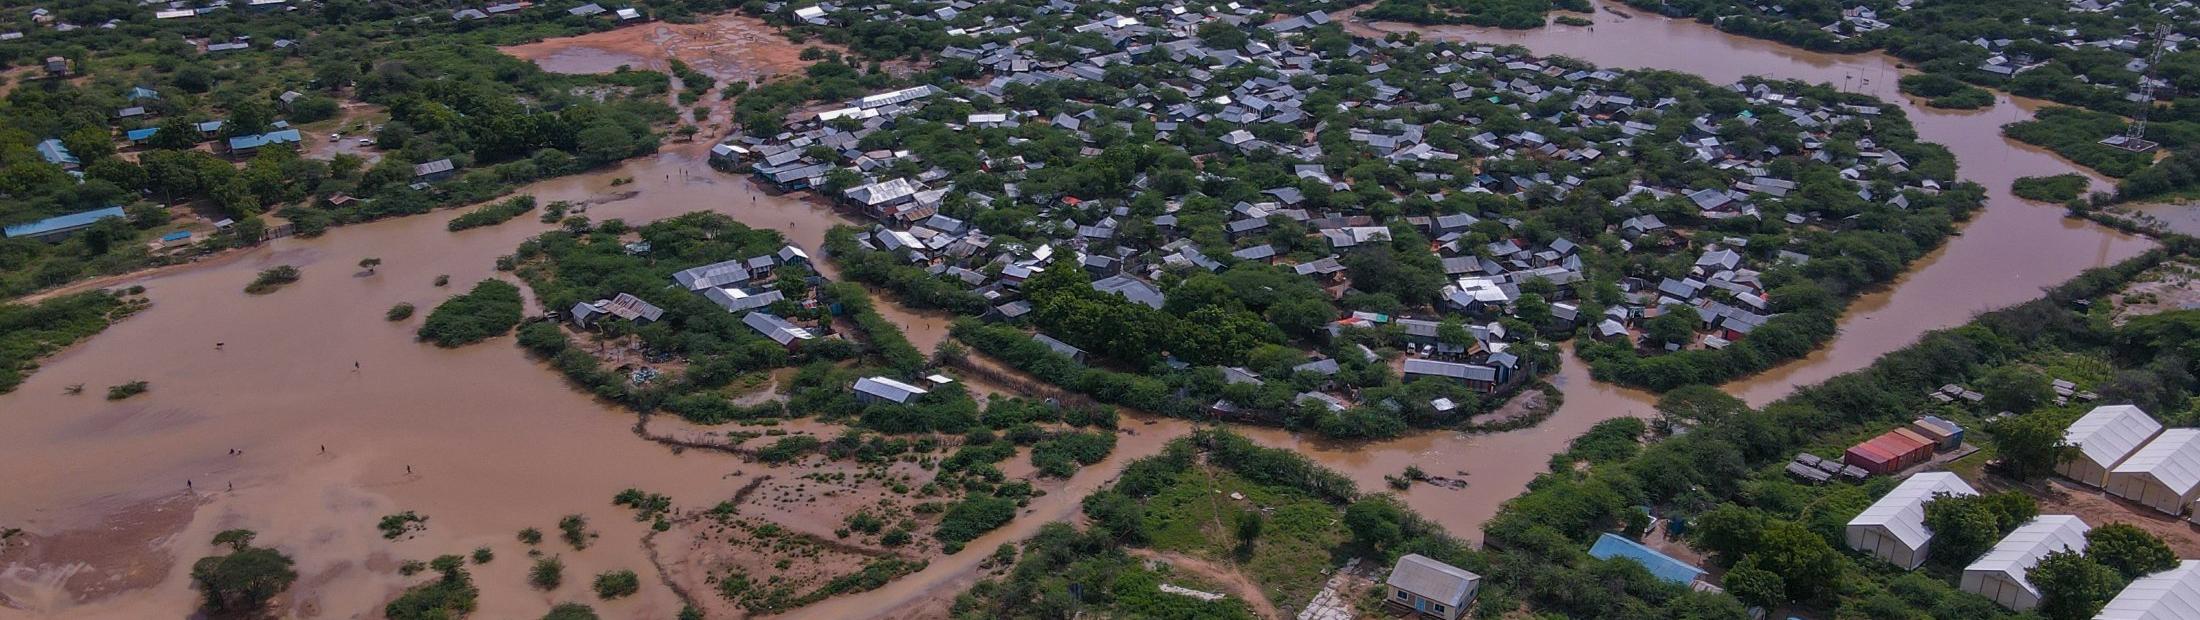 De la sequía a las inundaciones en el este de África: miles de personas obligadas a huir  